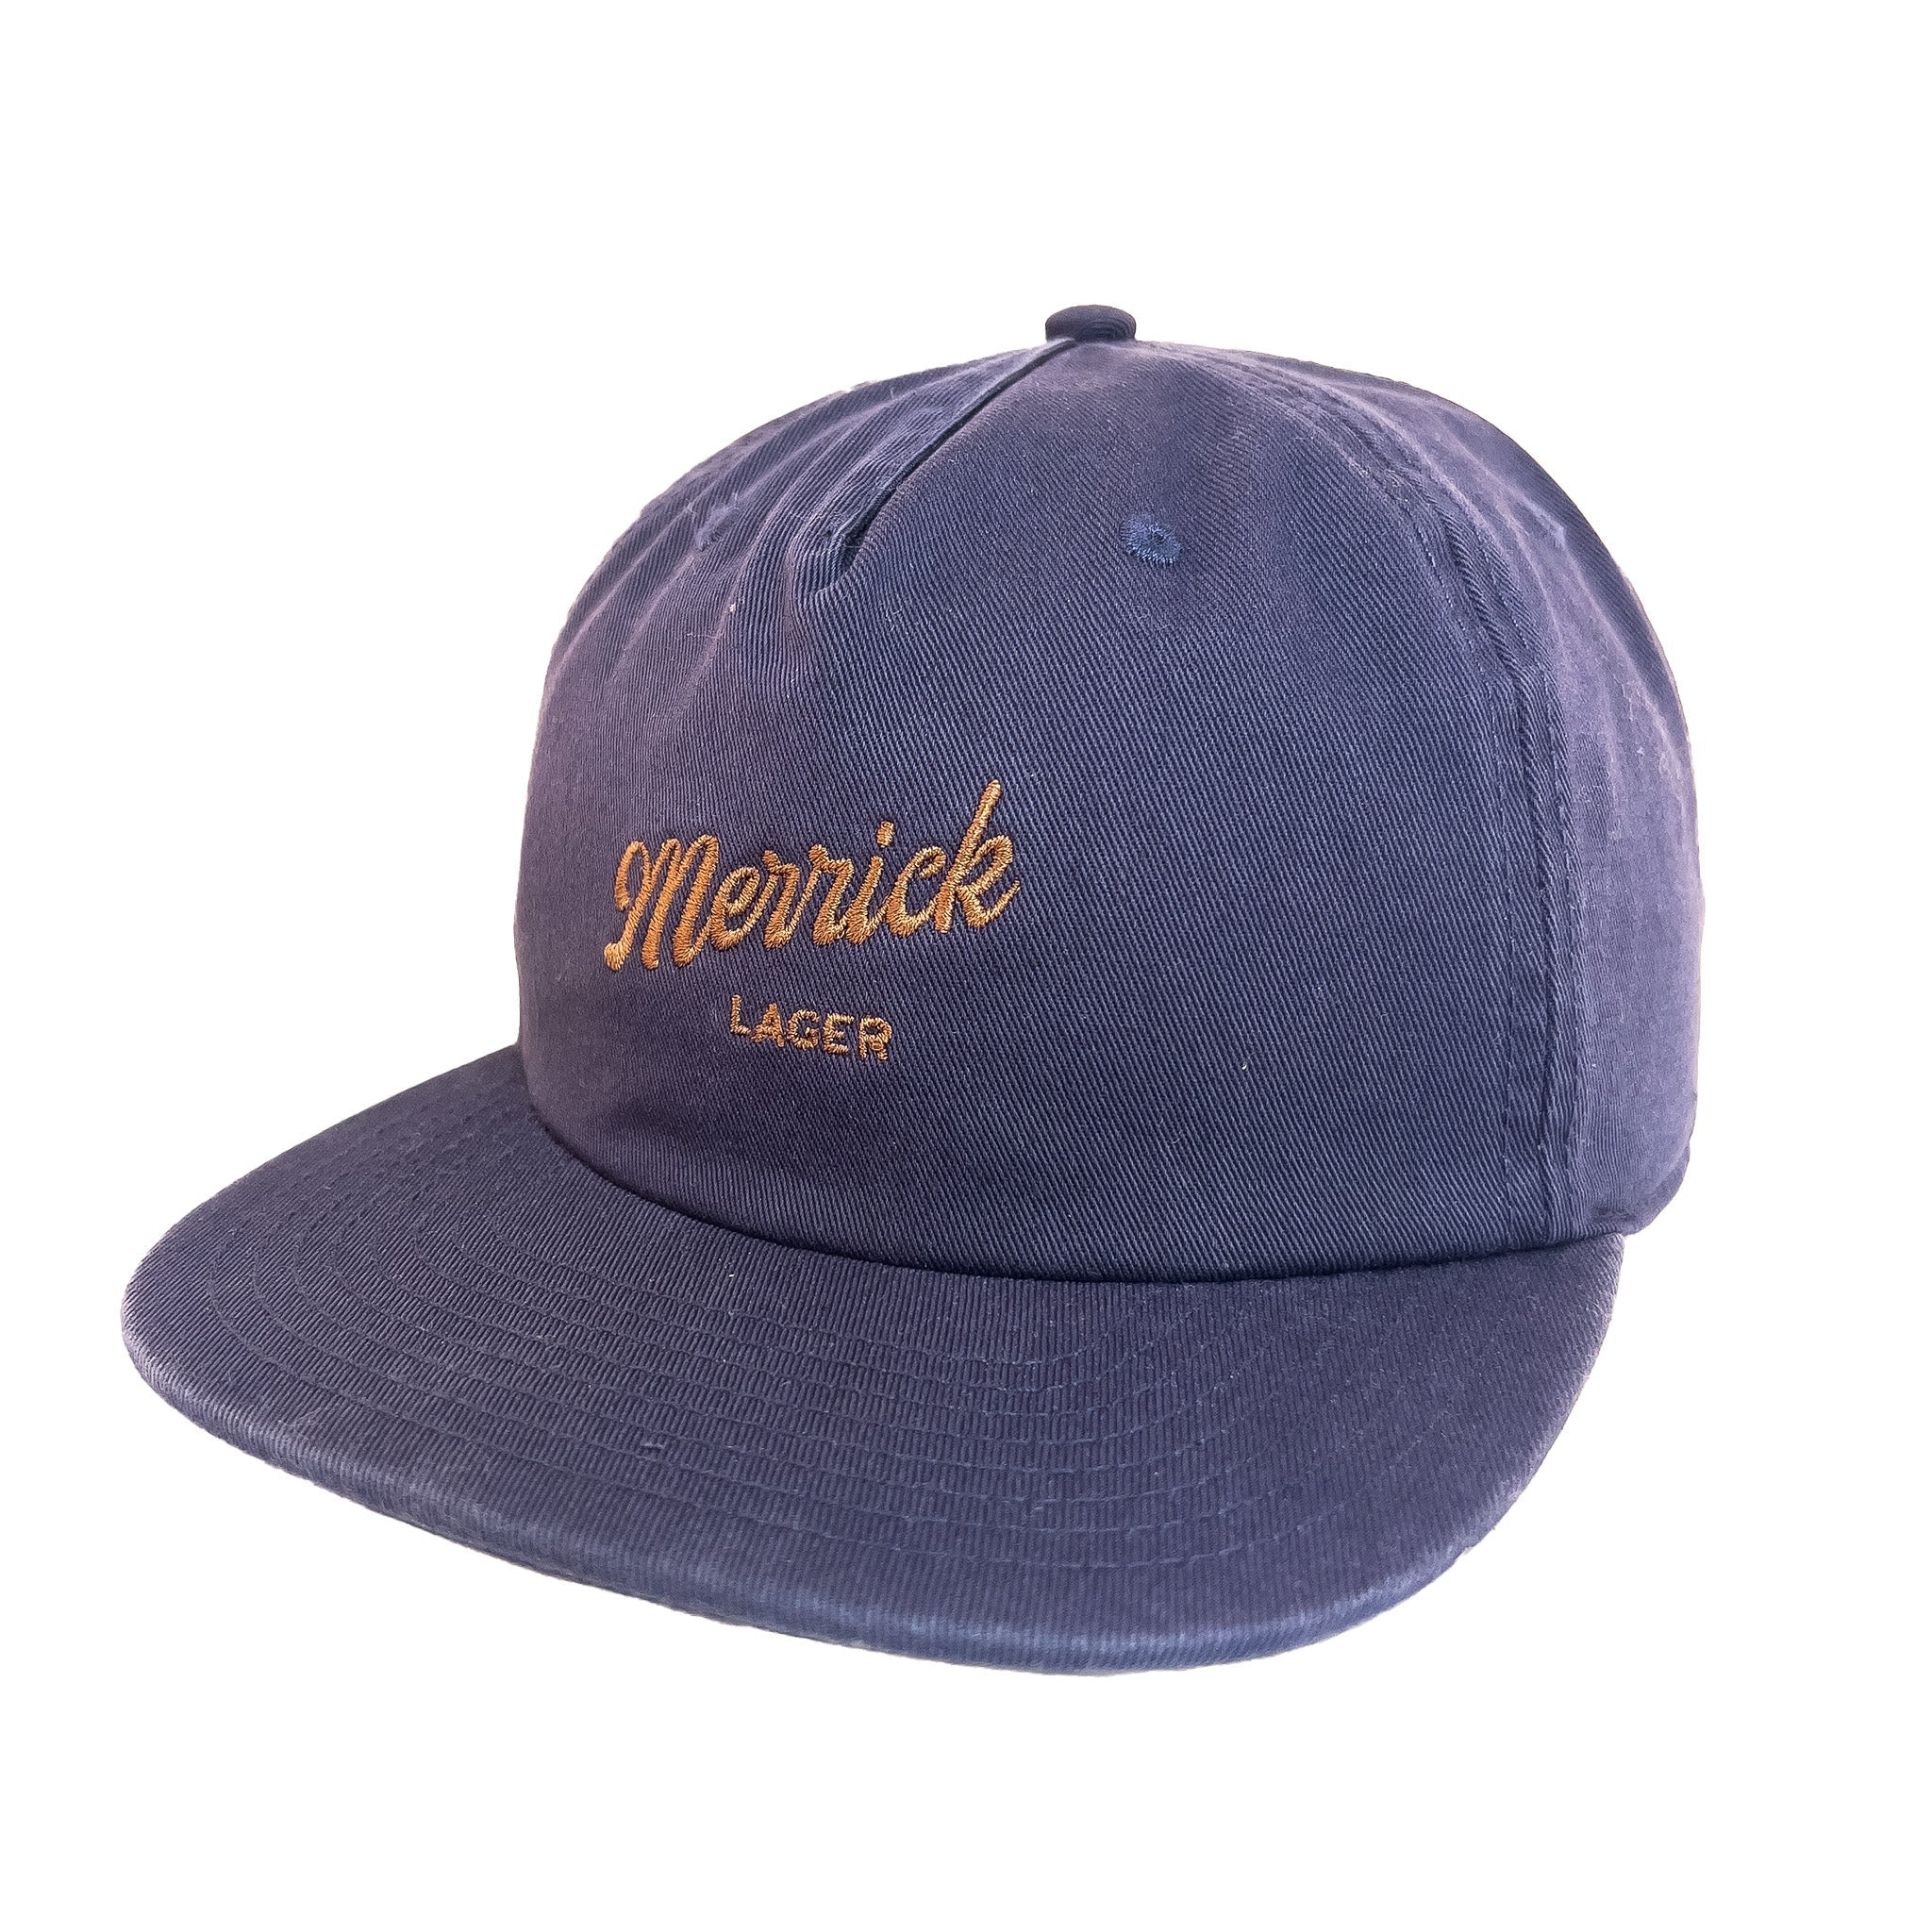 Merrick Lager General Hat